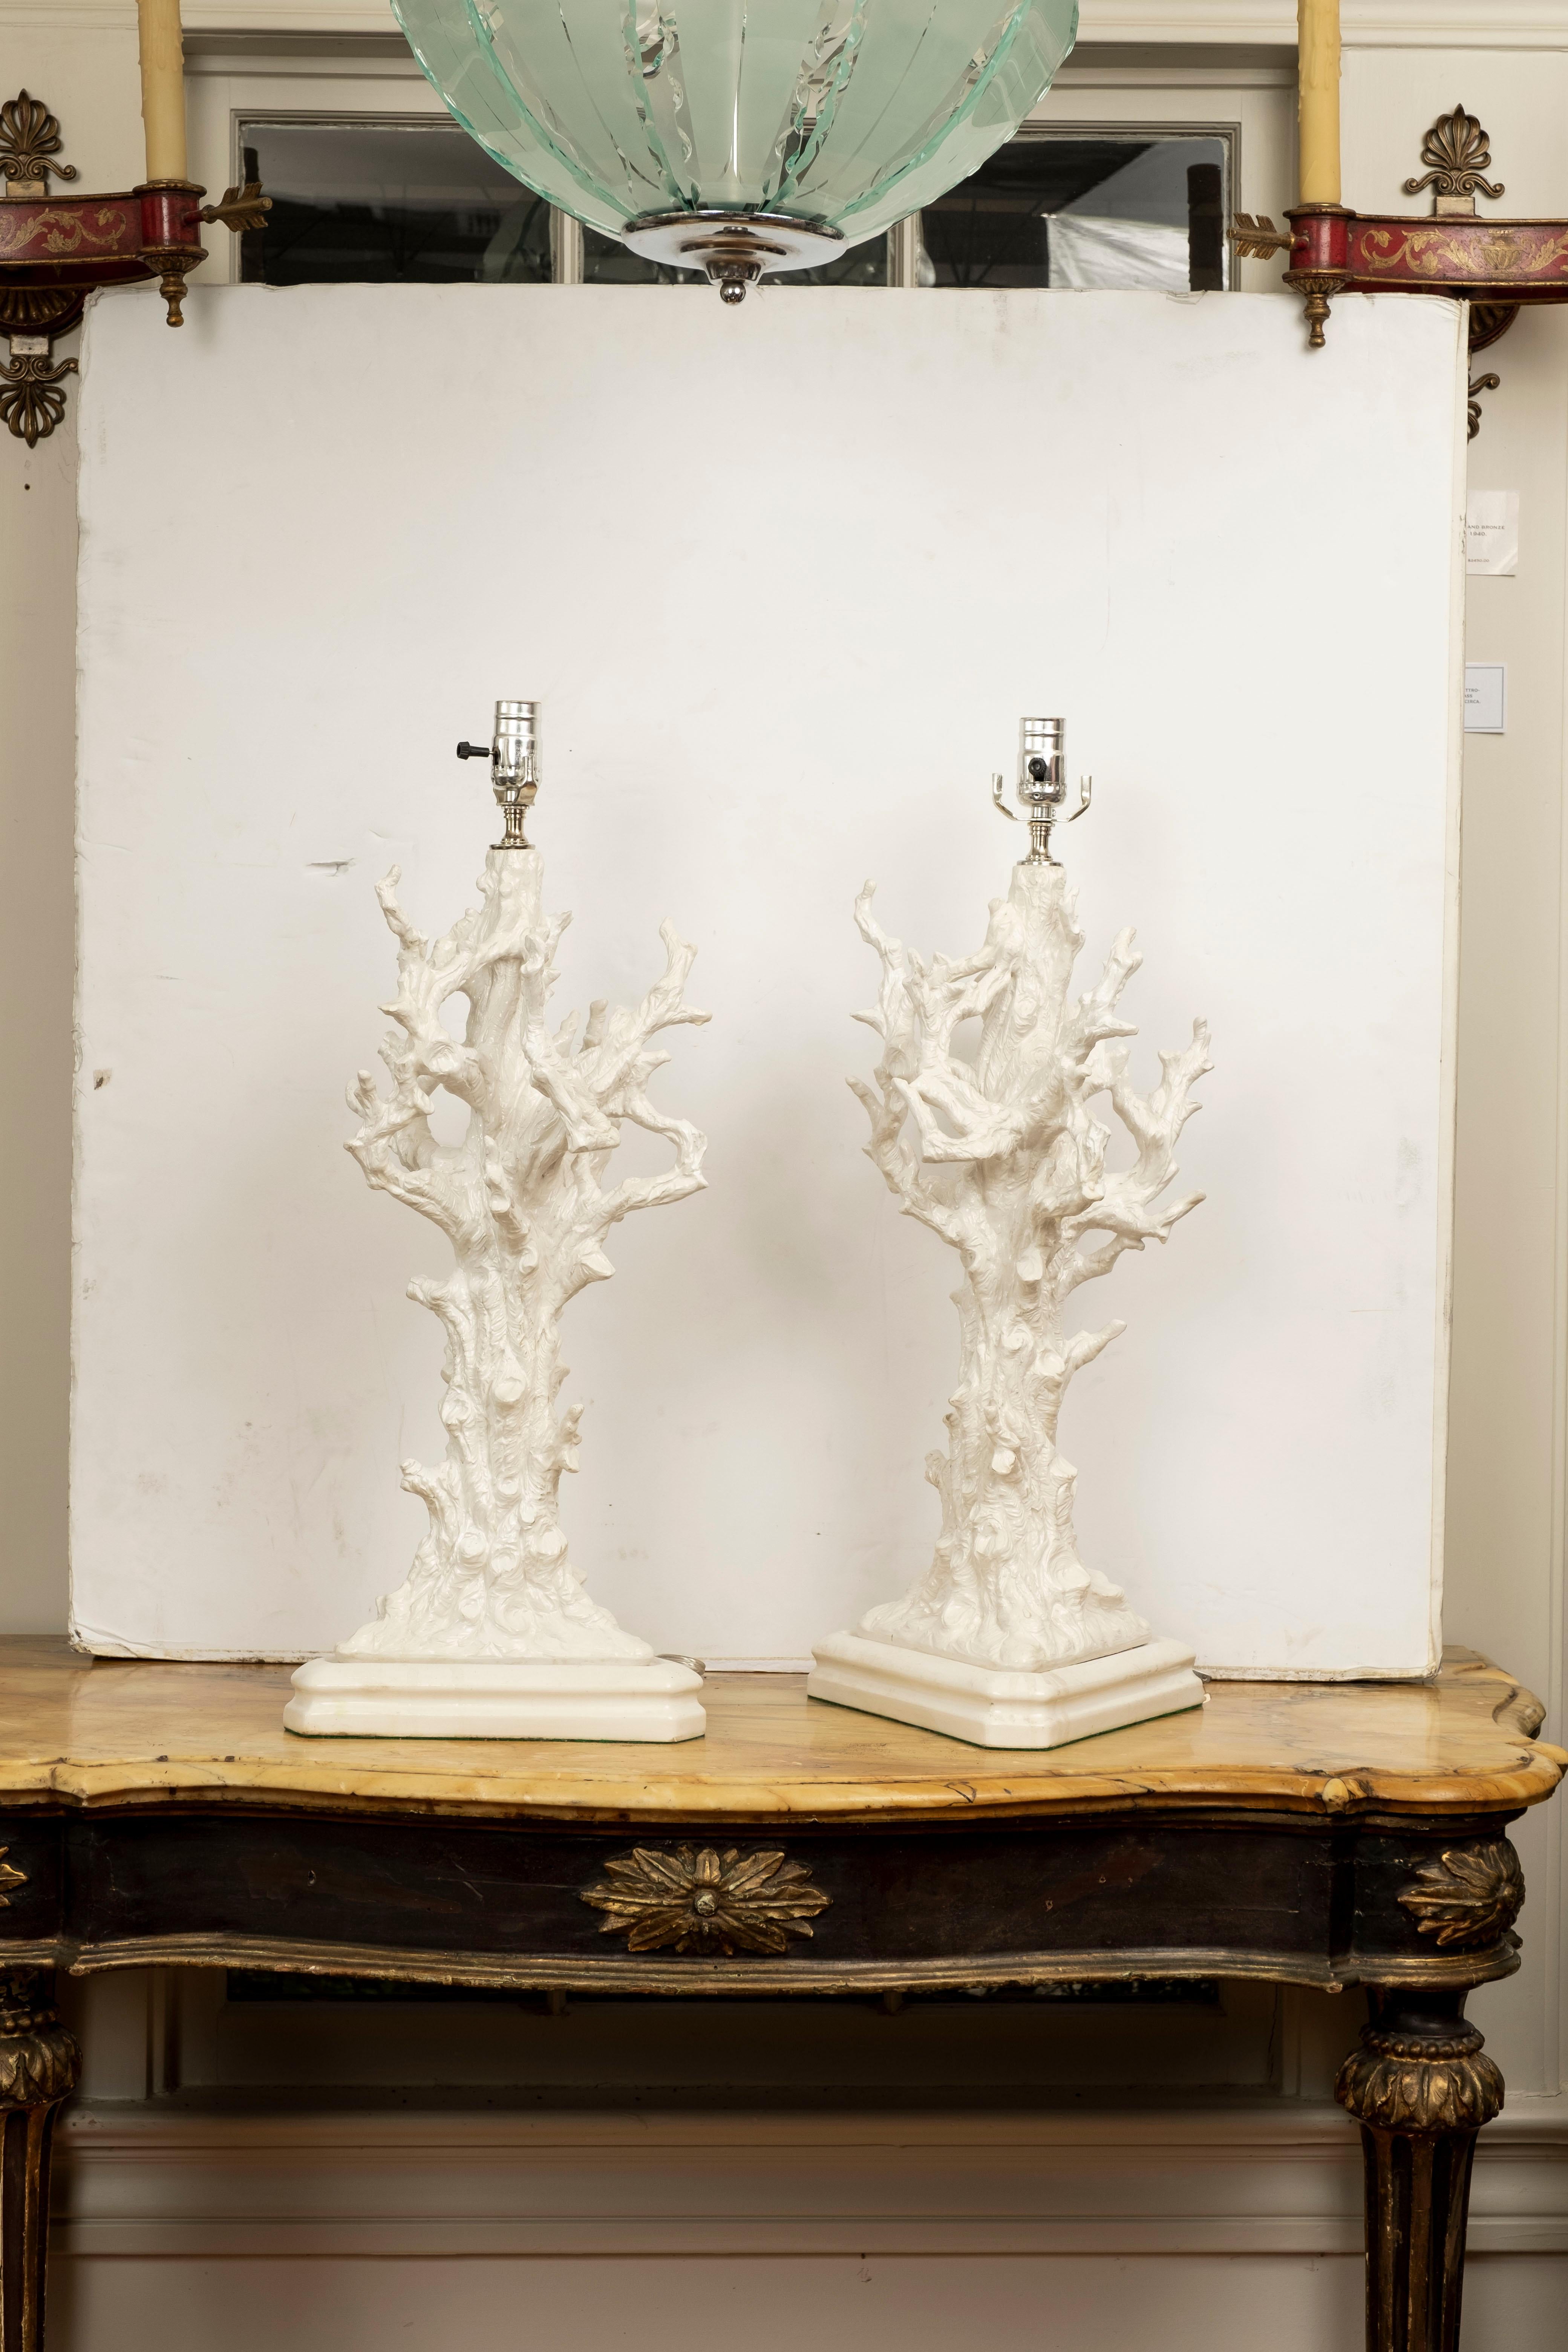 Paire de lampes italiennes en porcelaine blanche émaillée faux corail. Ces lampes italiennes rares et modernes sont très inhabituelles et ont été nouvellement câblées avec de nouvelles douilles et sont prêtes à recevoir les abat-jours de votre